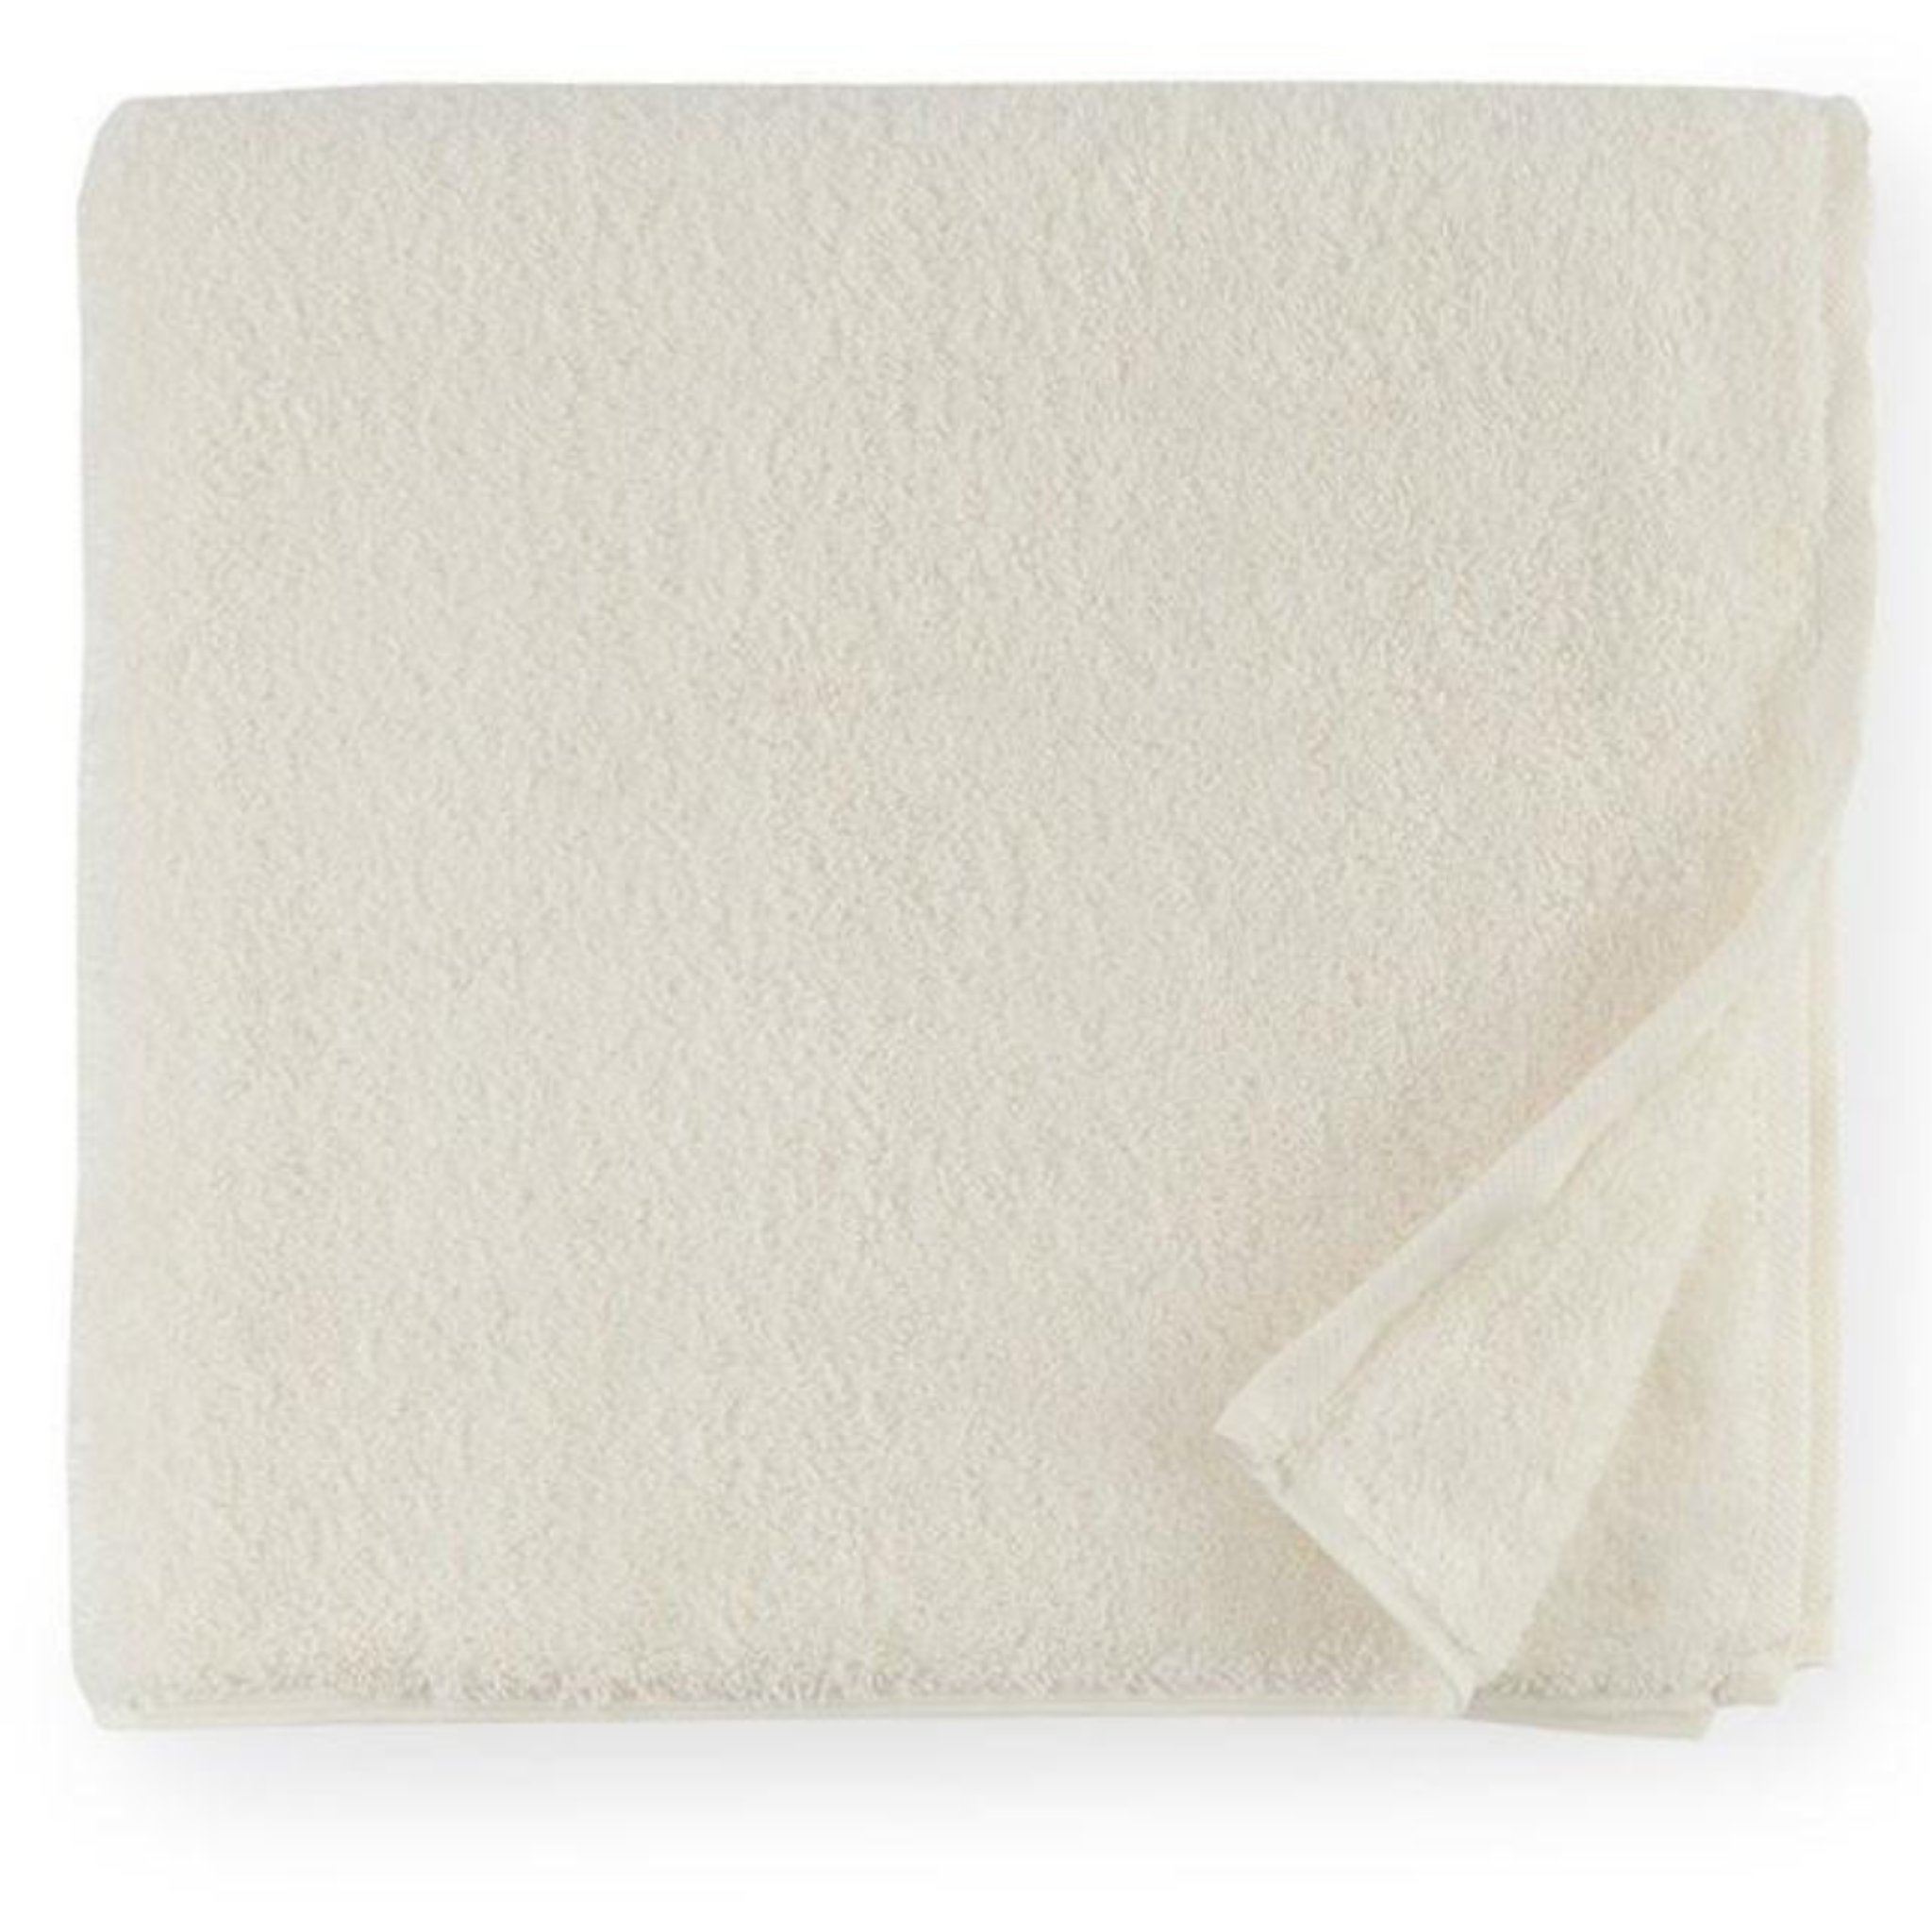 https://flandb.com/cdn/shop/products/Sferra-Sarma-Bath-Towel-Ivory-Main_5000x.png?v=1668337024